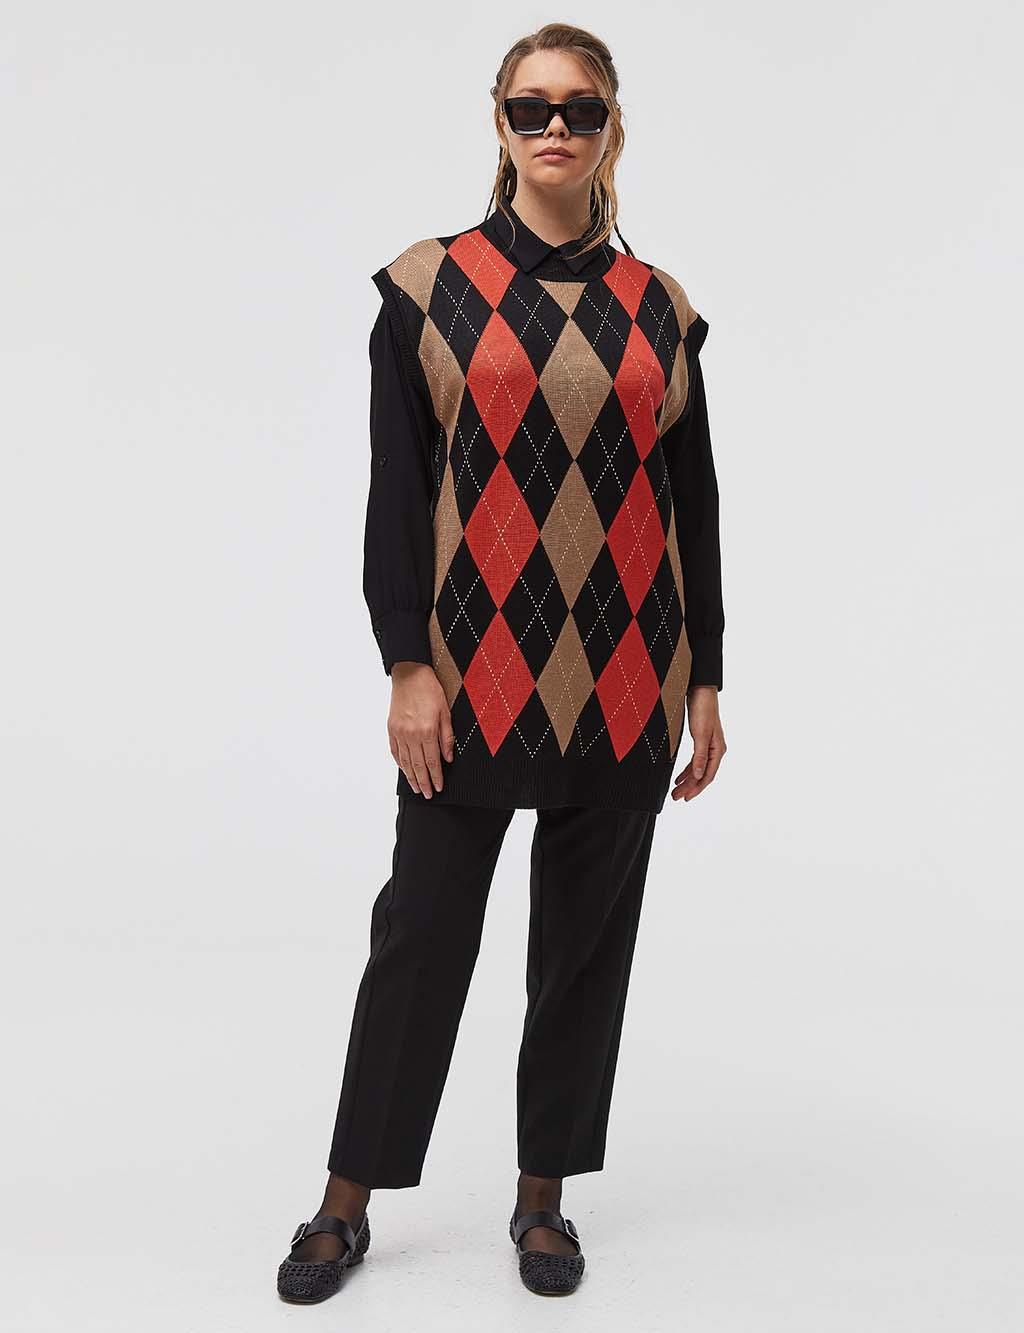 Diamond Patterned Knitwear Sweater Black